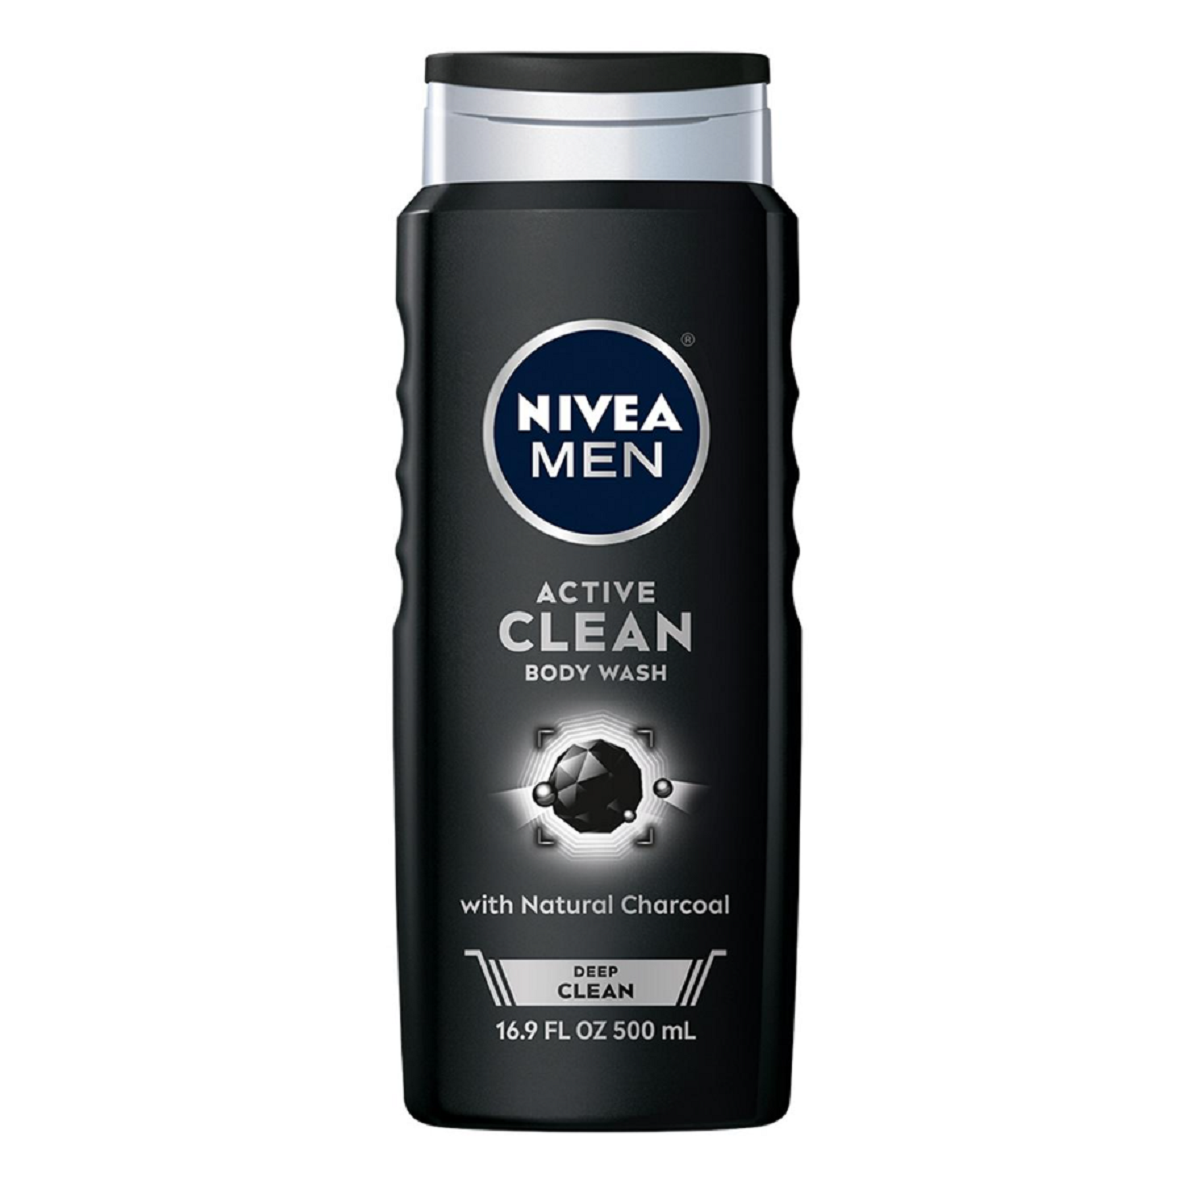 NIVEA Men Active Clean Body Wash with Natural Charcoal, NIVEA Men Body Wash Coupon